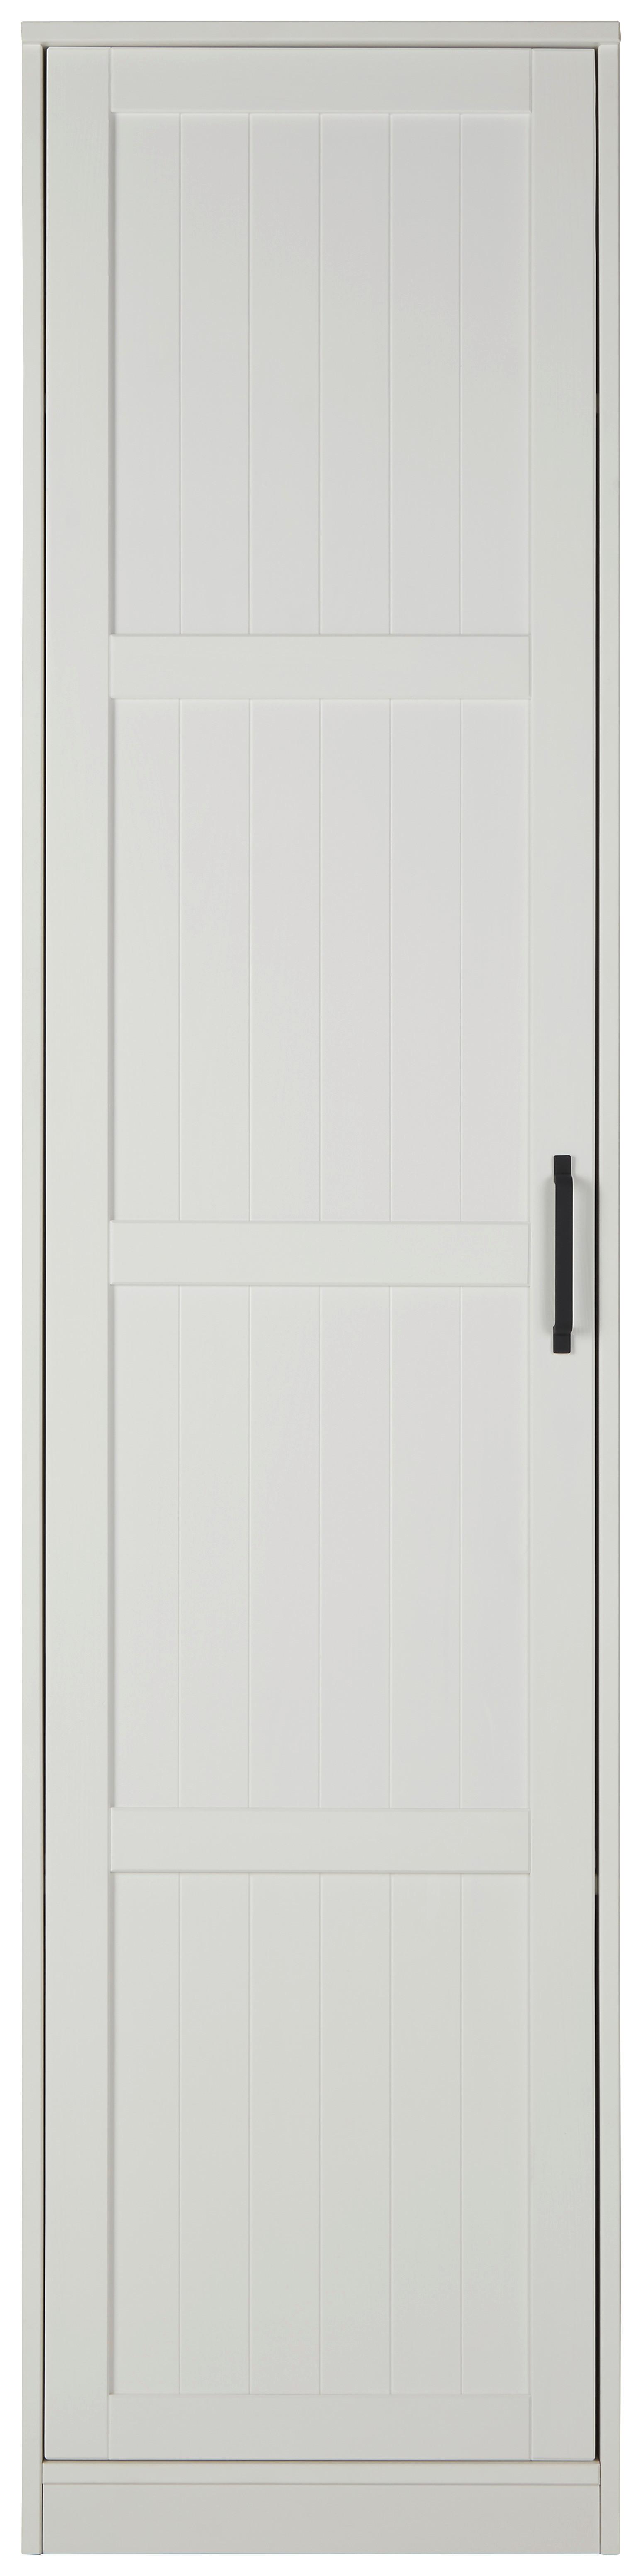 Ormar S Klasičnim Vratima Madita - bijela/crna, Romantik / Landhaus, drvo/plastika (52/220/60cm) - Modern Living